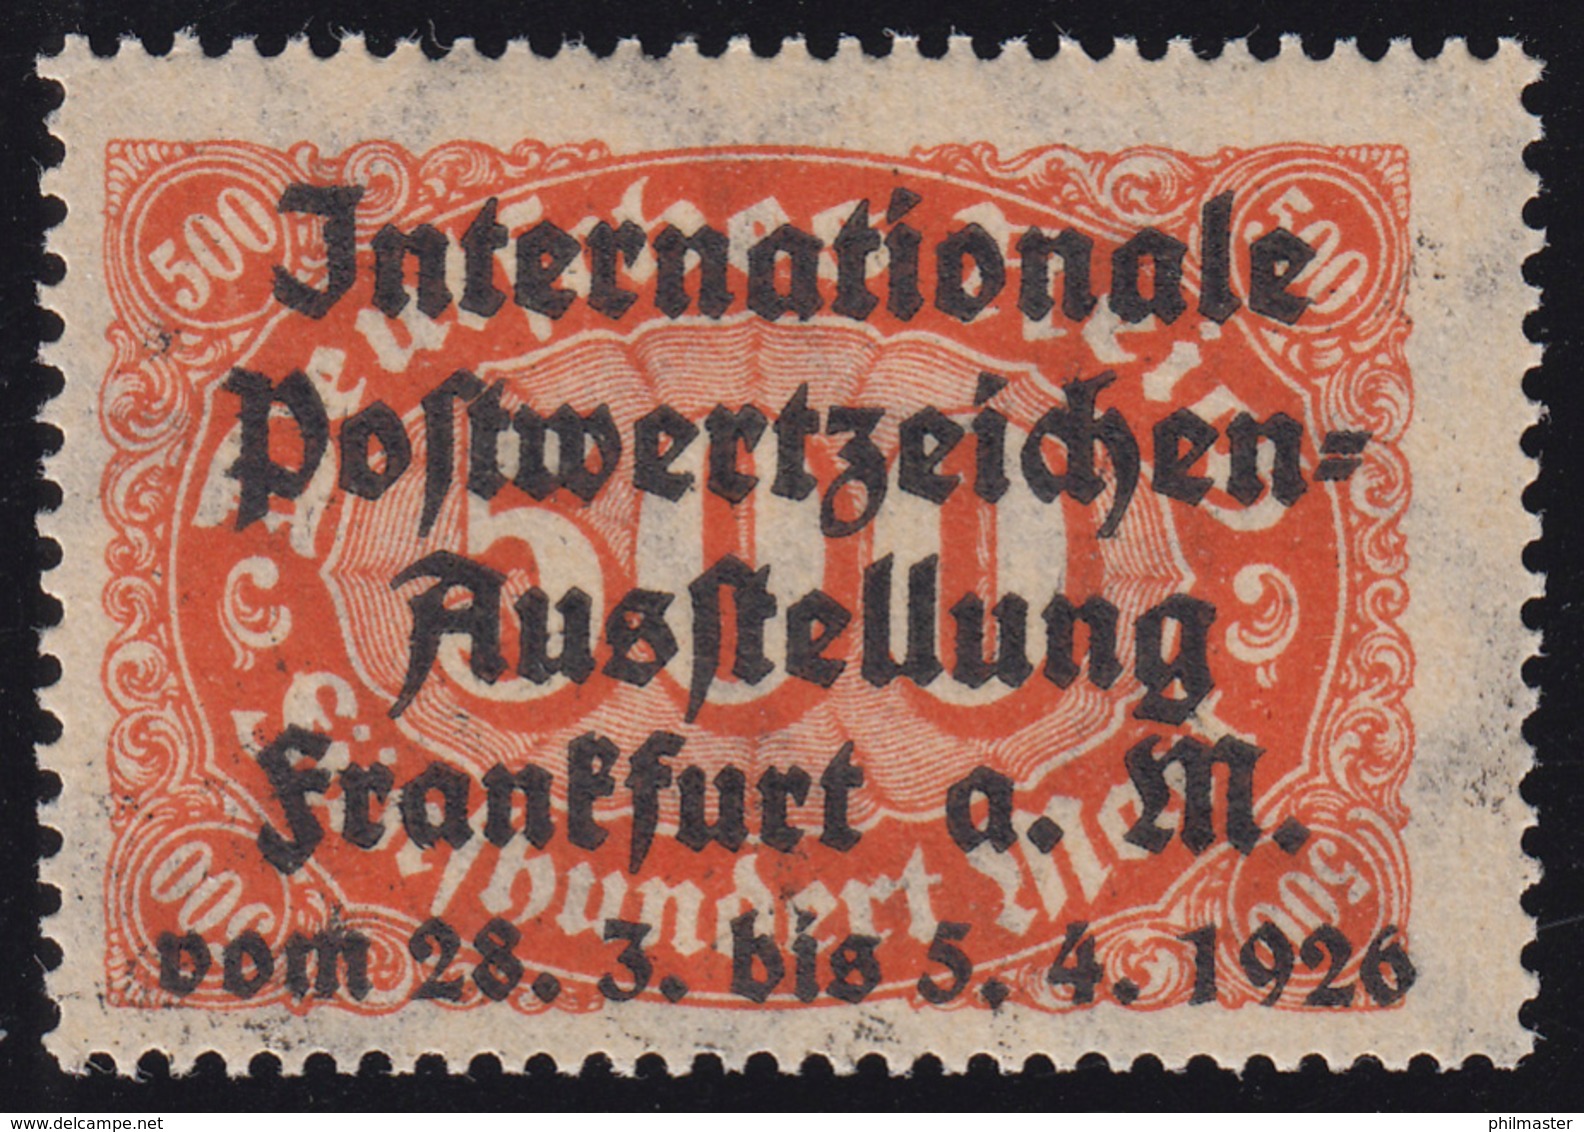 Privater Zudruck Intern. Postwertzeichen-Ausstellung Frankfurt 1926 Auf 251, ** - Expositions Philatéliques